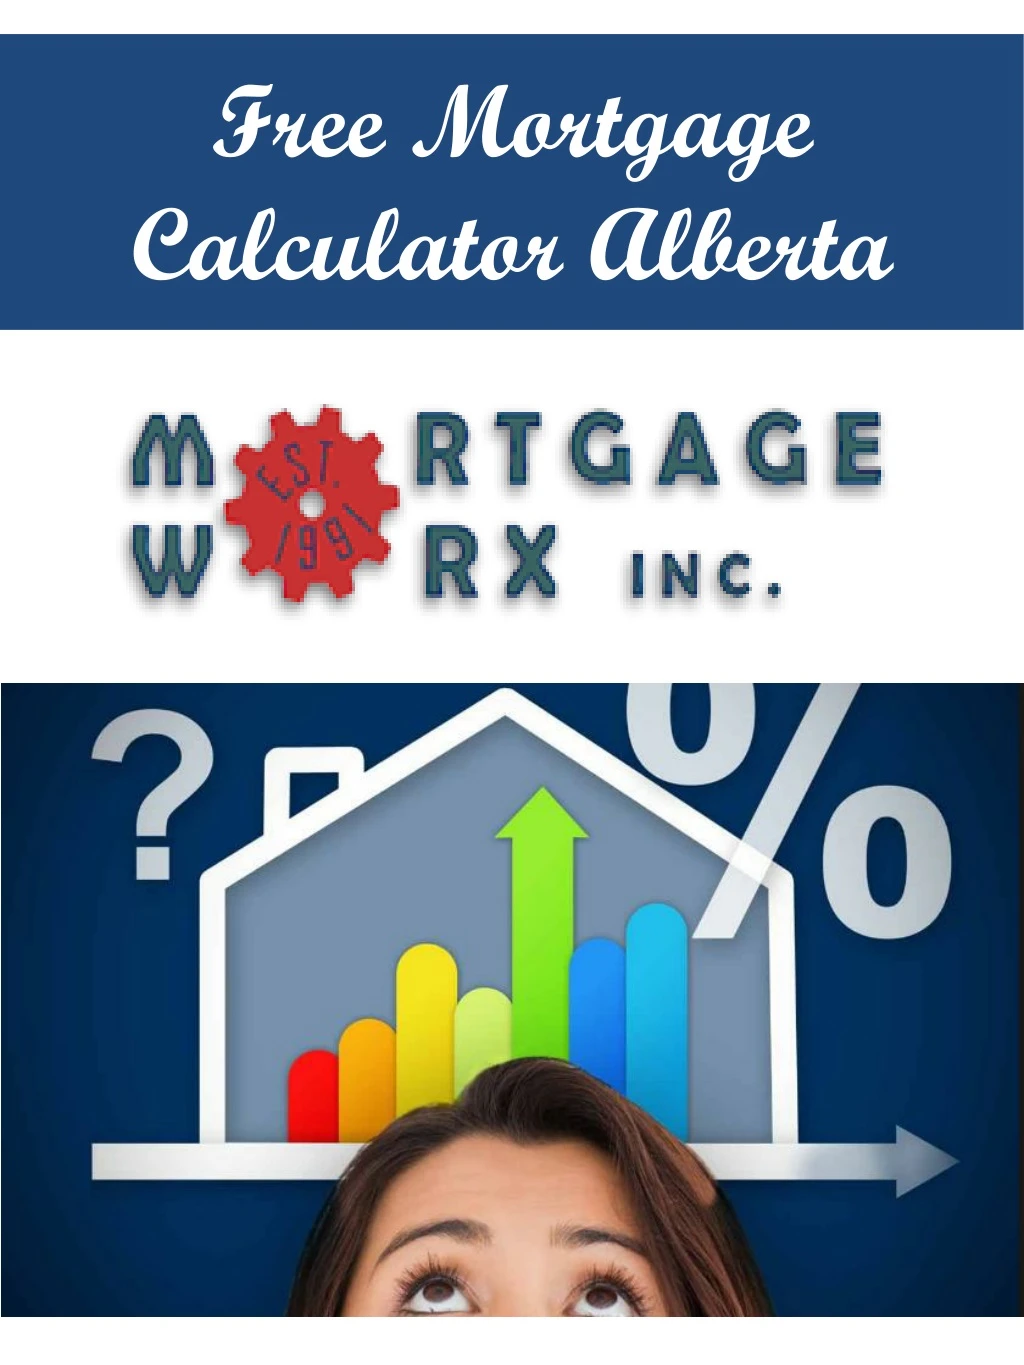 free mortgage calculator alberta